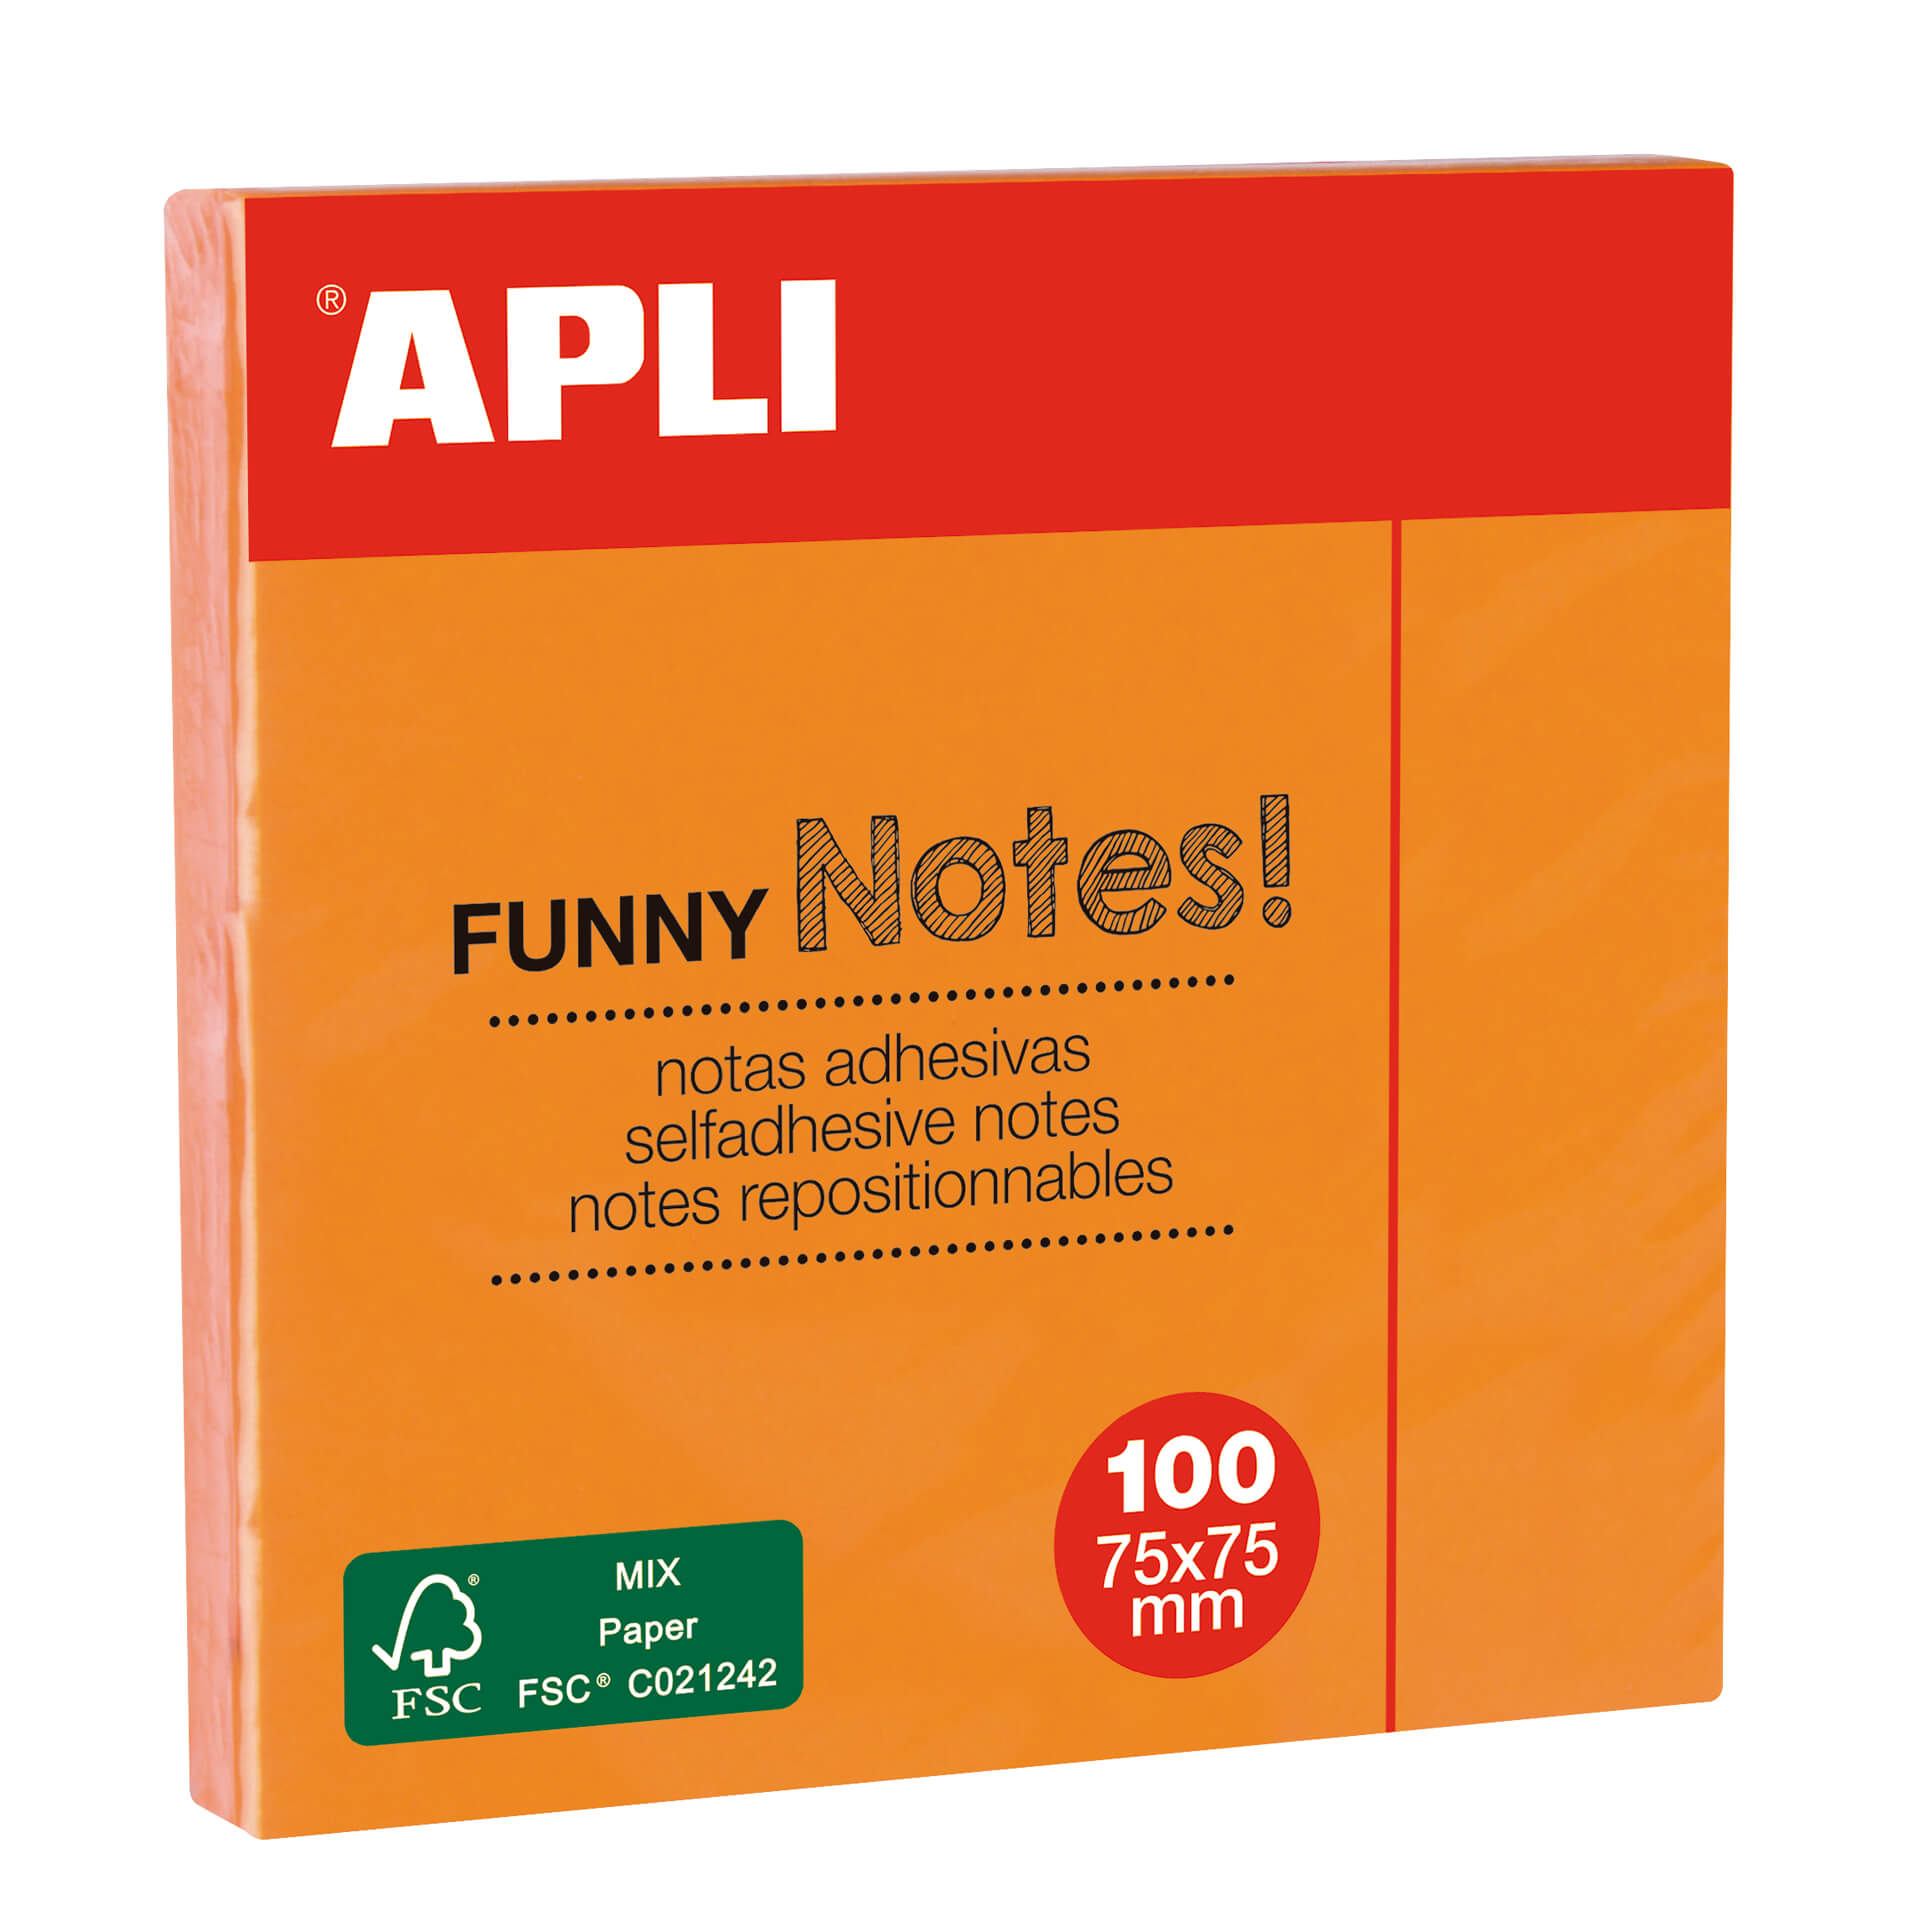 Apli Funny Sticky Notes Adhésives 75x75mm - Bloc de 100 Feuilles  - Orange Fluo